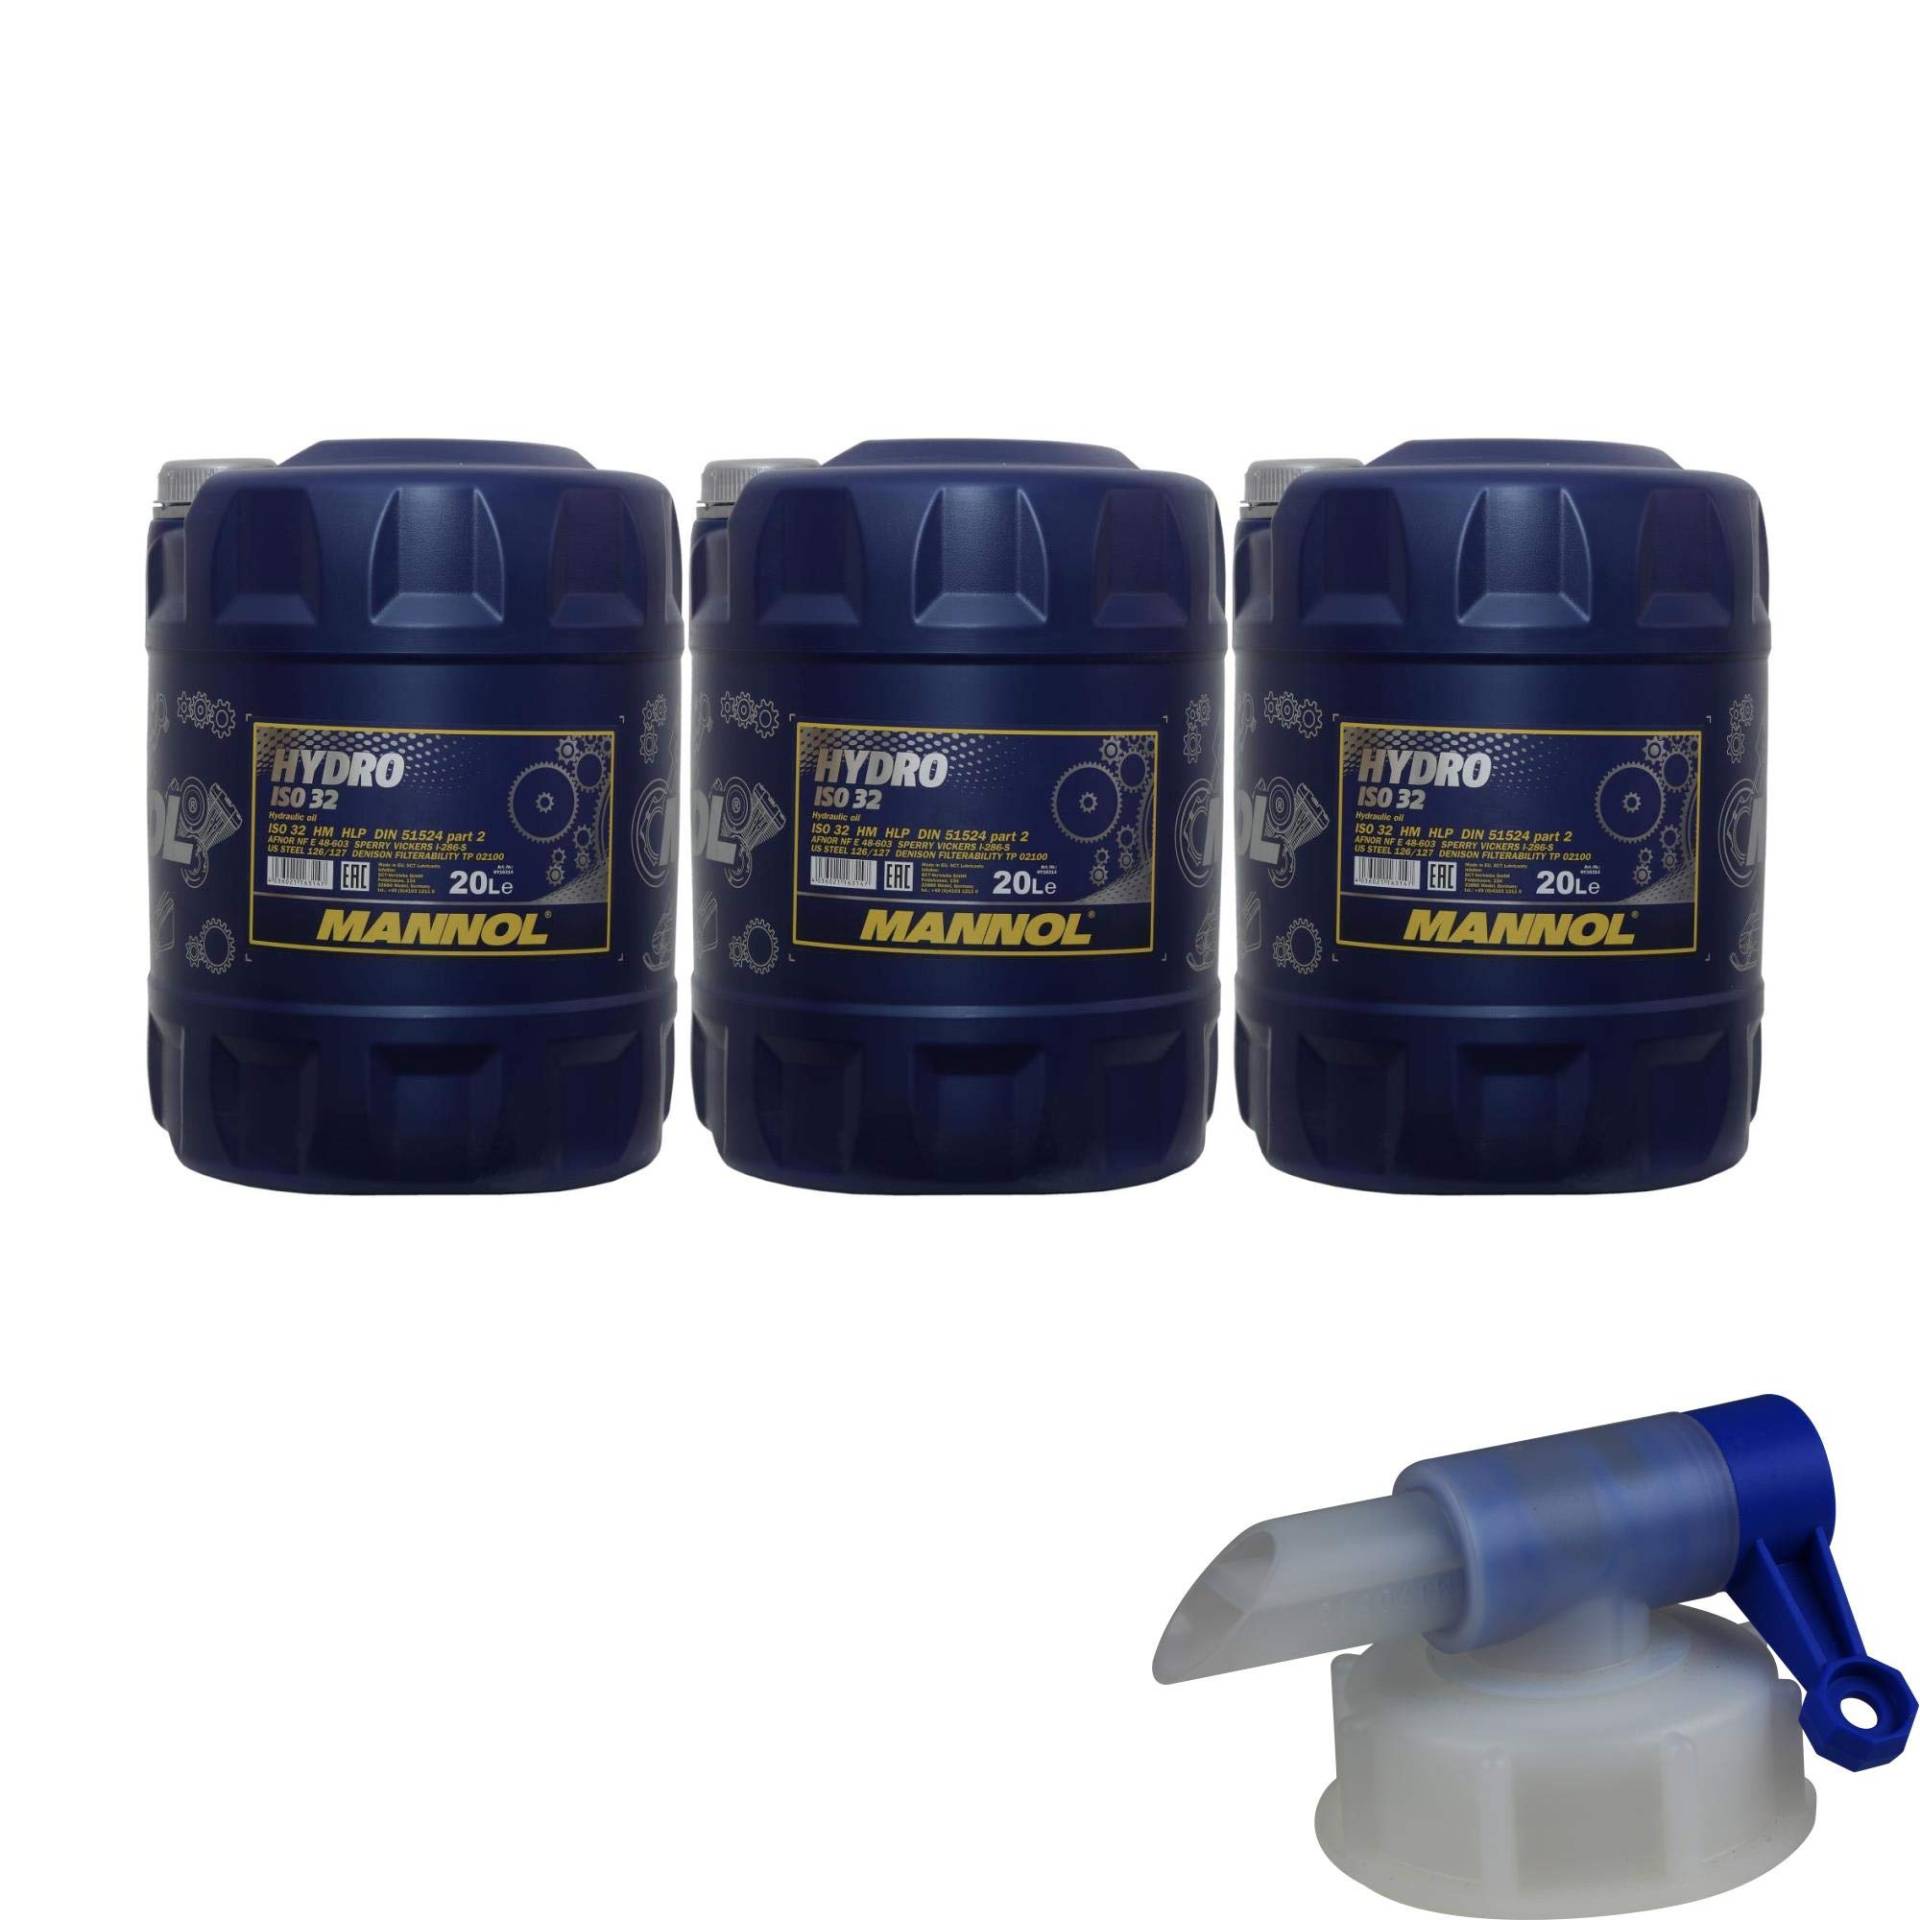 3x 20 Liter MANNOL Hydrauliköl Hydro ISO 32 Hydraulic Fluid inkl. Auslaufhahn von Diederichs